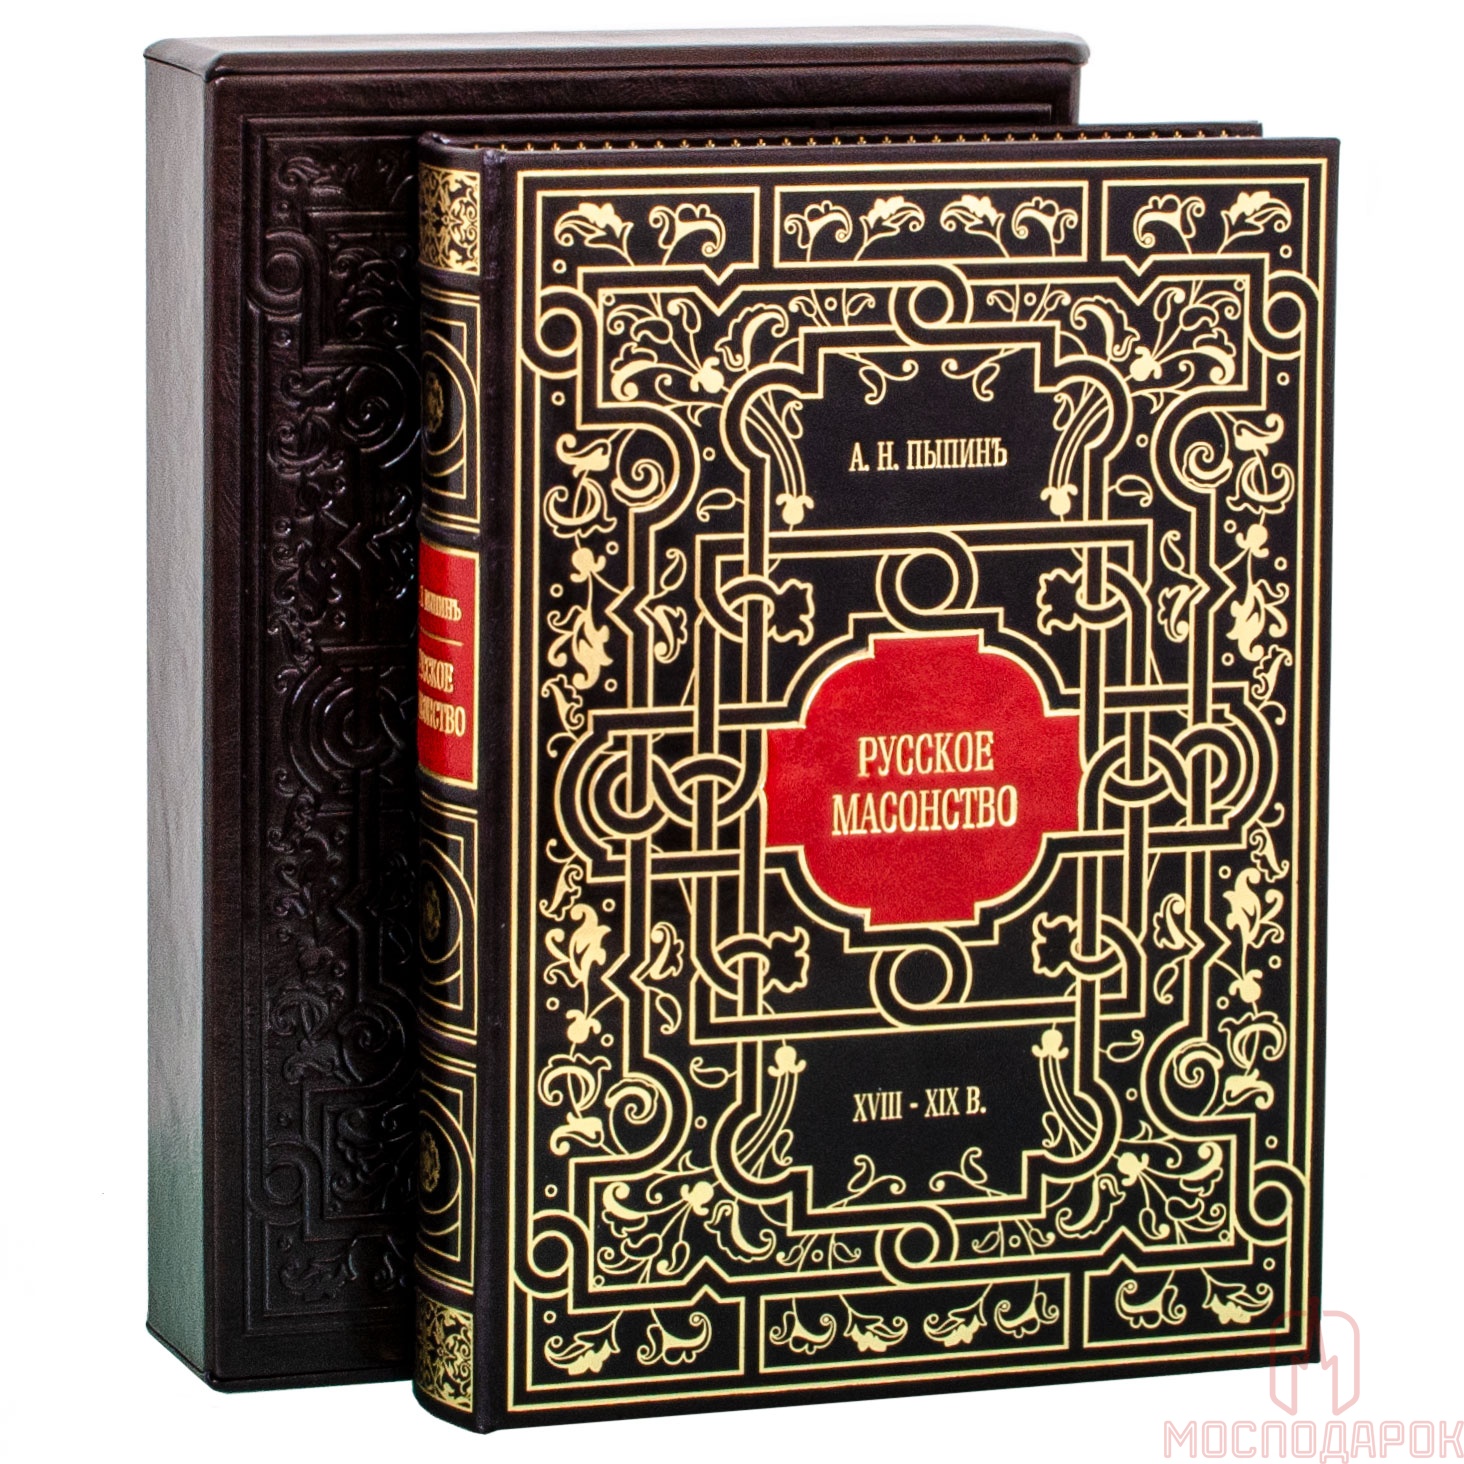 Подарочная книга "Русское масонство" Пыпинъ А.П. - артикул: 205184 | Мосподарок 